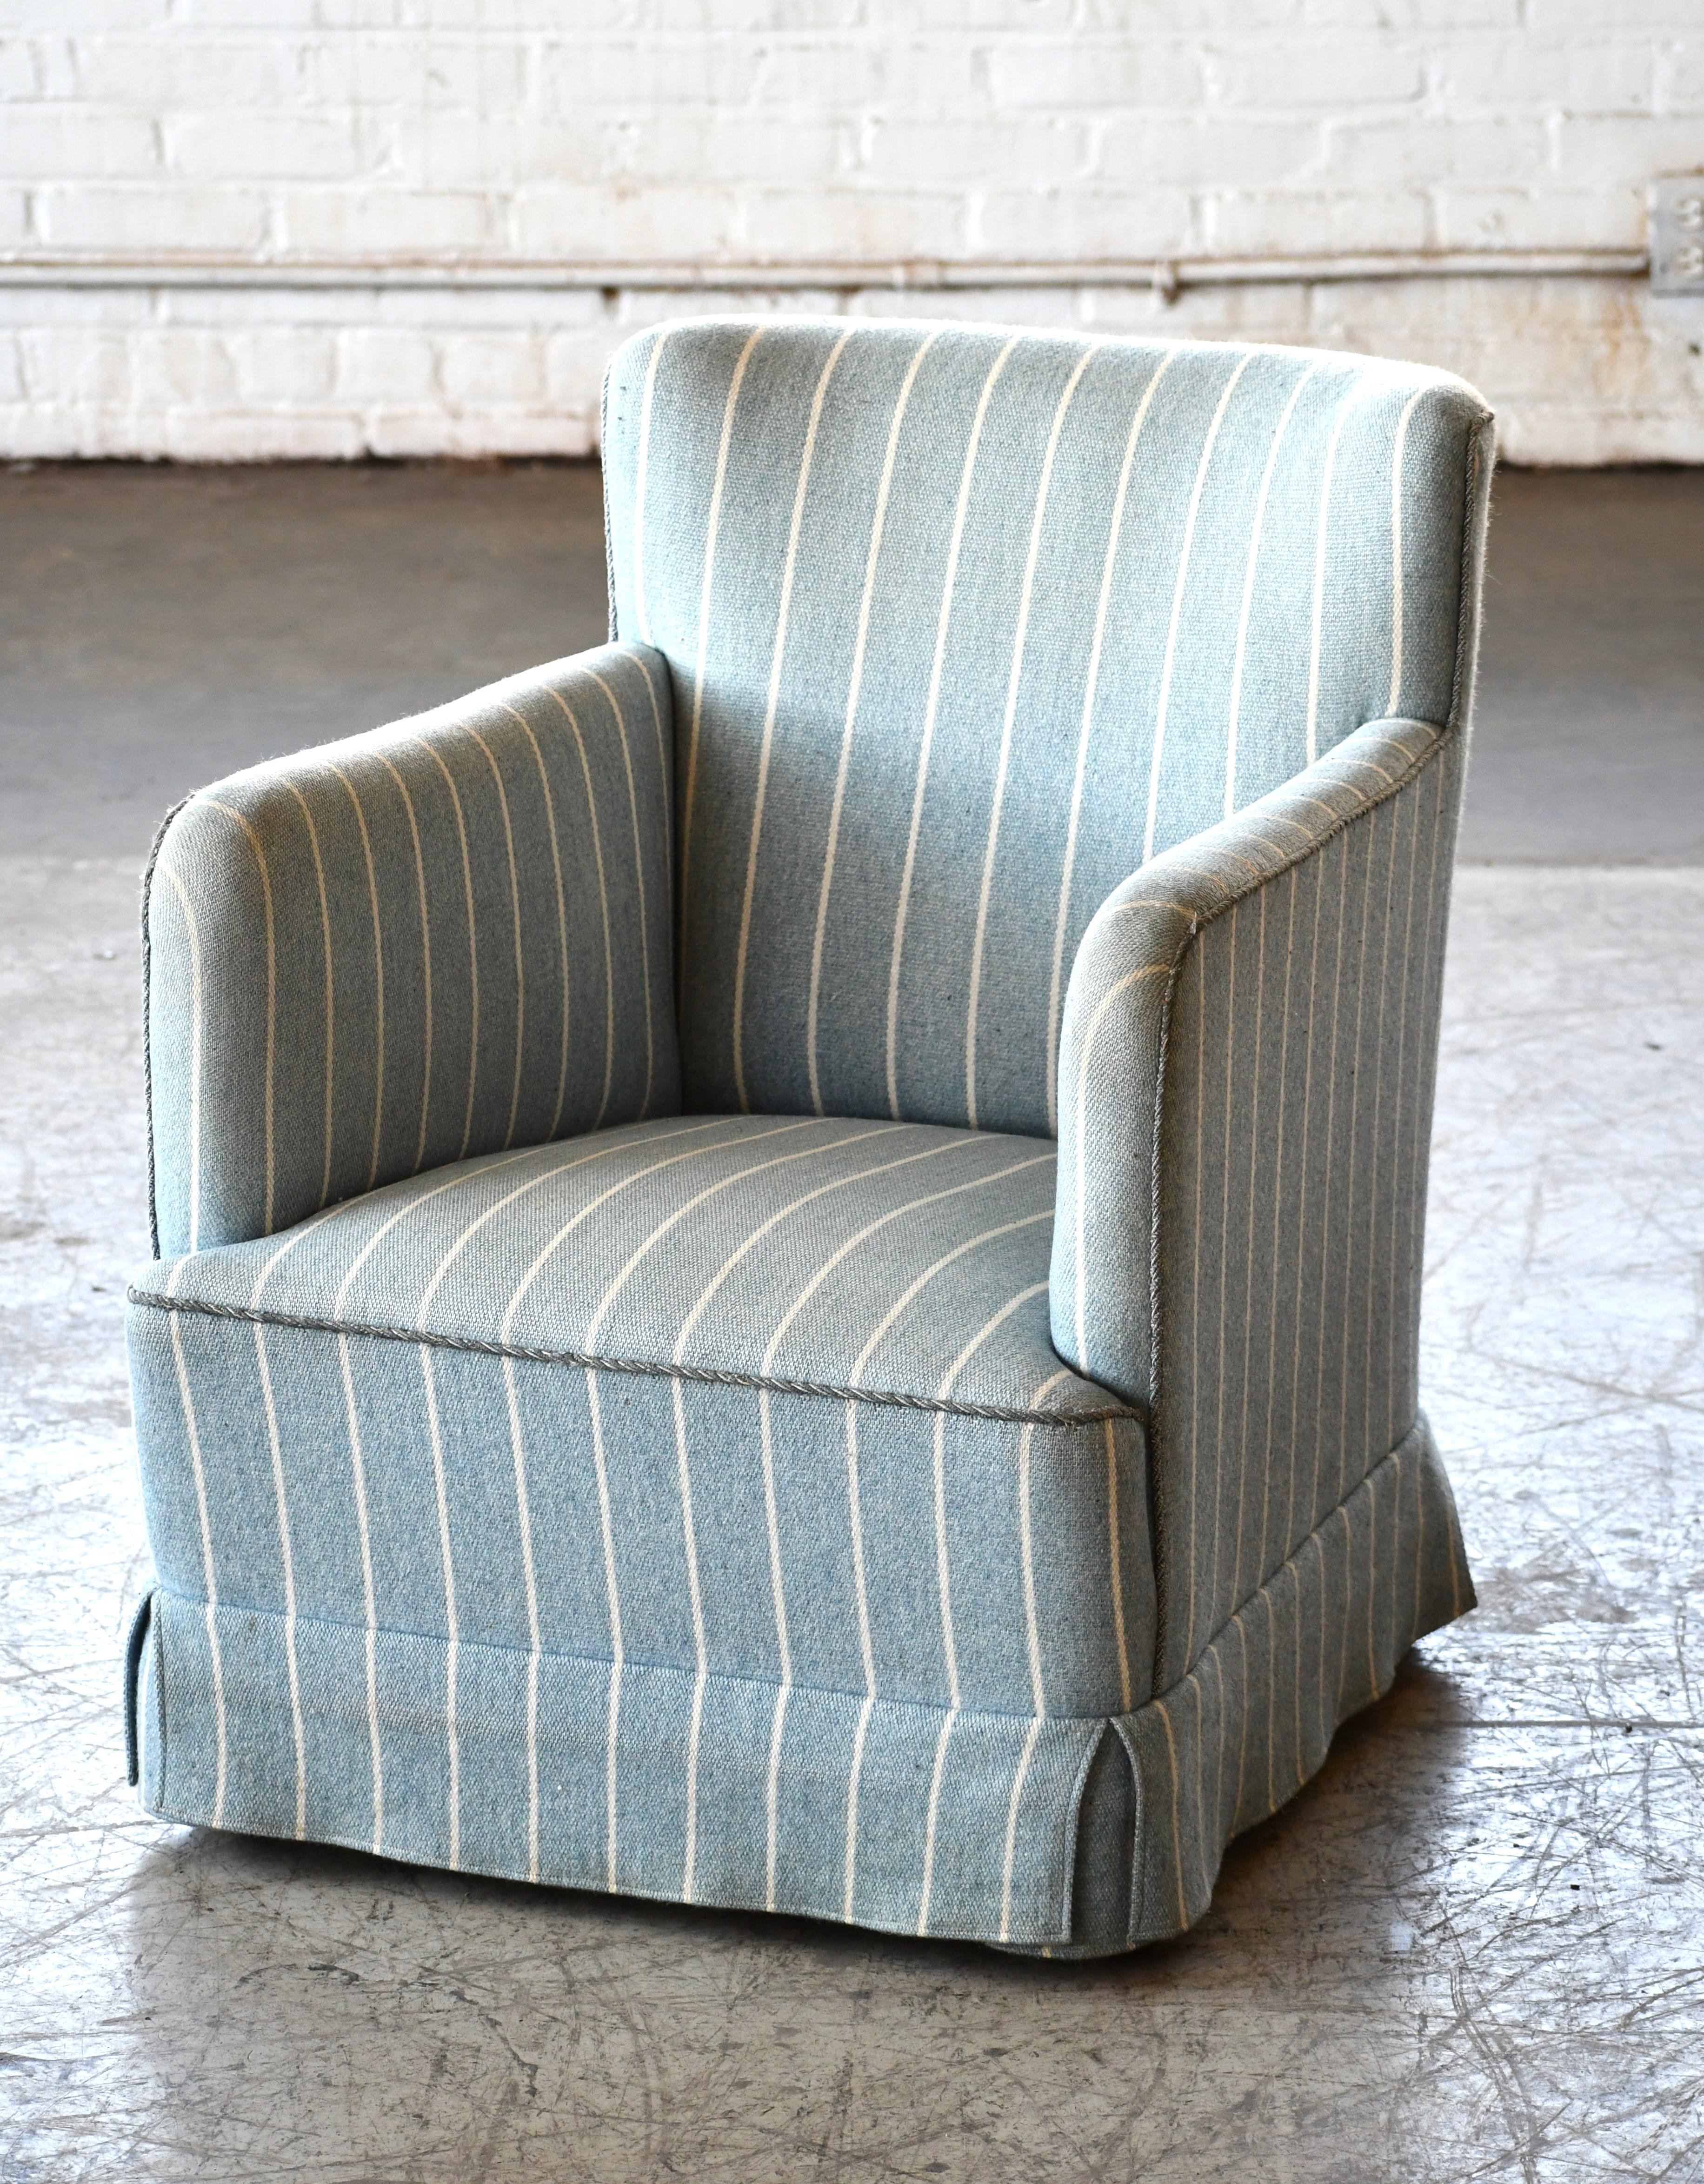 Elegantes Paar kleinformatiger Sessel aus den 1950er Jahren im Stil von Peter Hvidt und Orla Molgaard, hergestellt in Dänemark zwischen 1940 und 1950. Der Stuhl weist eine hohe, etwas kantige Armlehne auf, kombiniert mit einer niedrigen Rückenlehne,